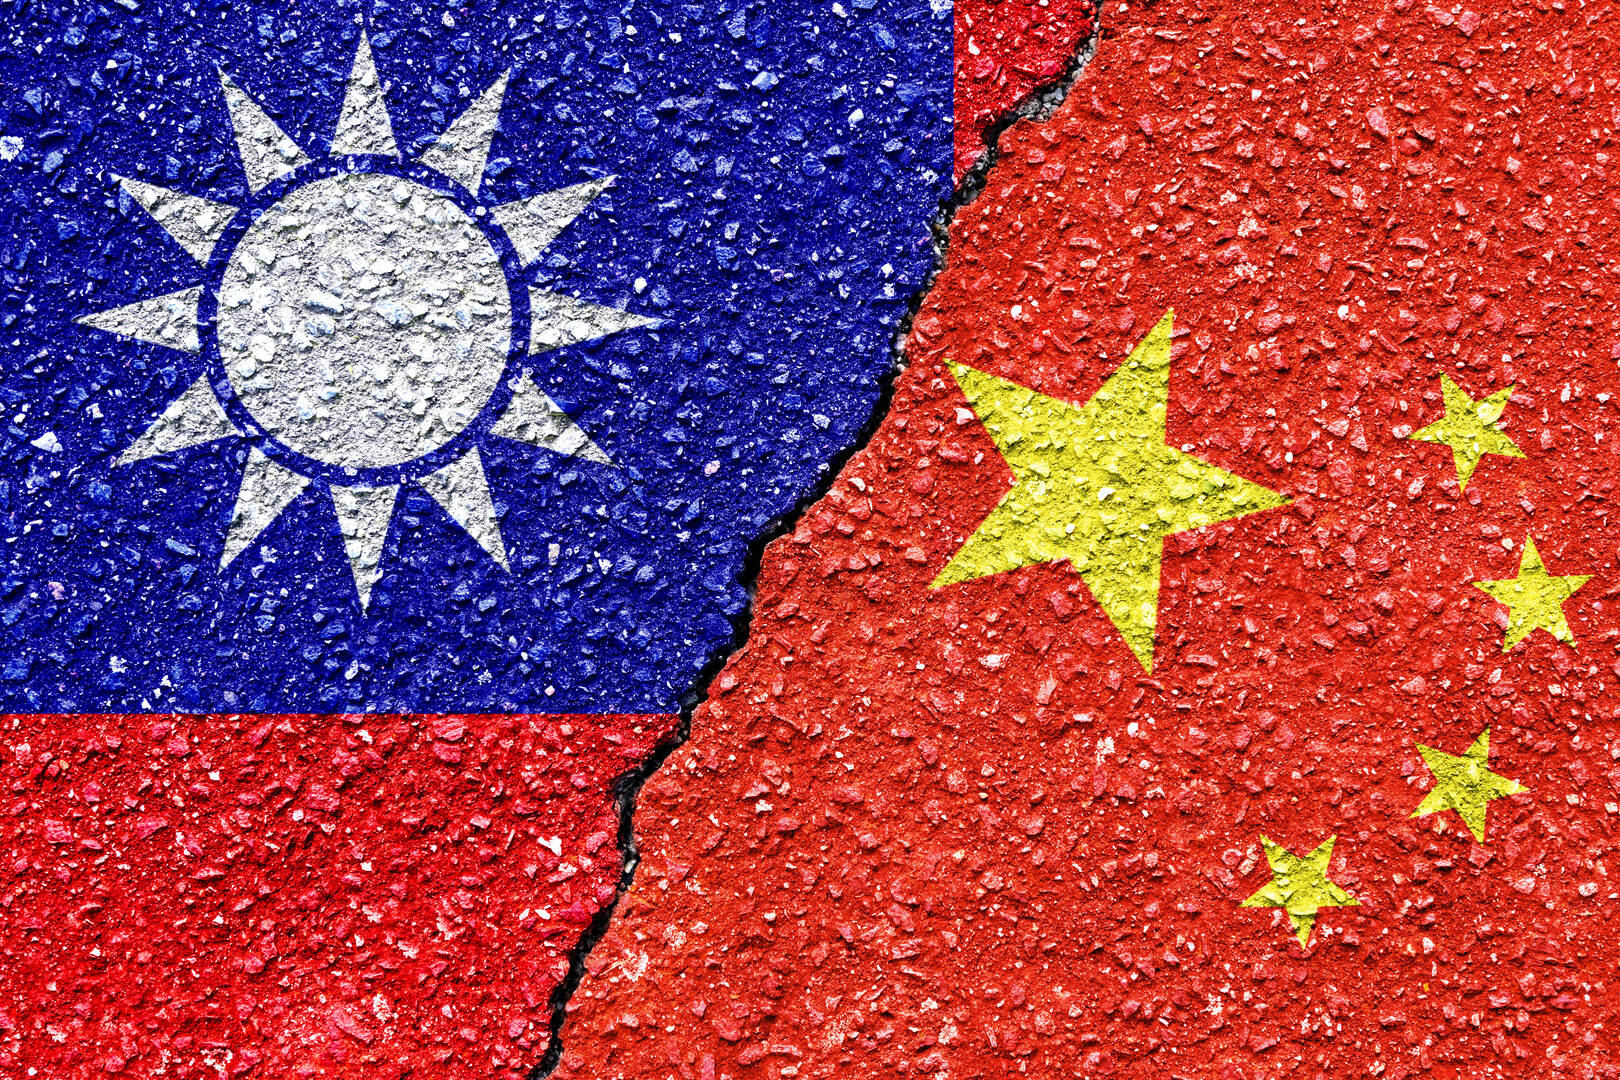 سفير الصين ينصح أستراليا بتوخي الحذر في علاقاتها بتايوان: تعاملوا مع مبدأ صين واحدة على محمل الجد!